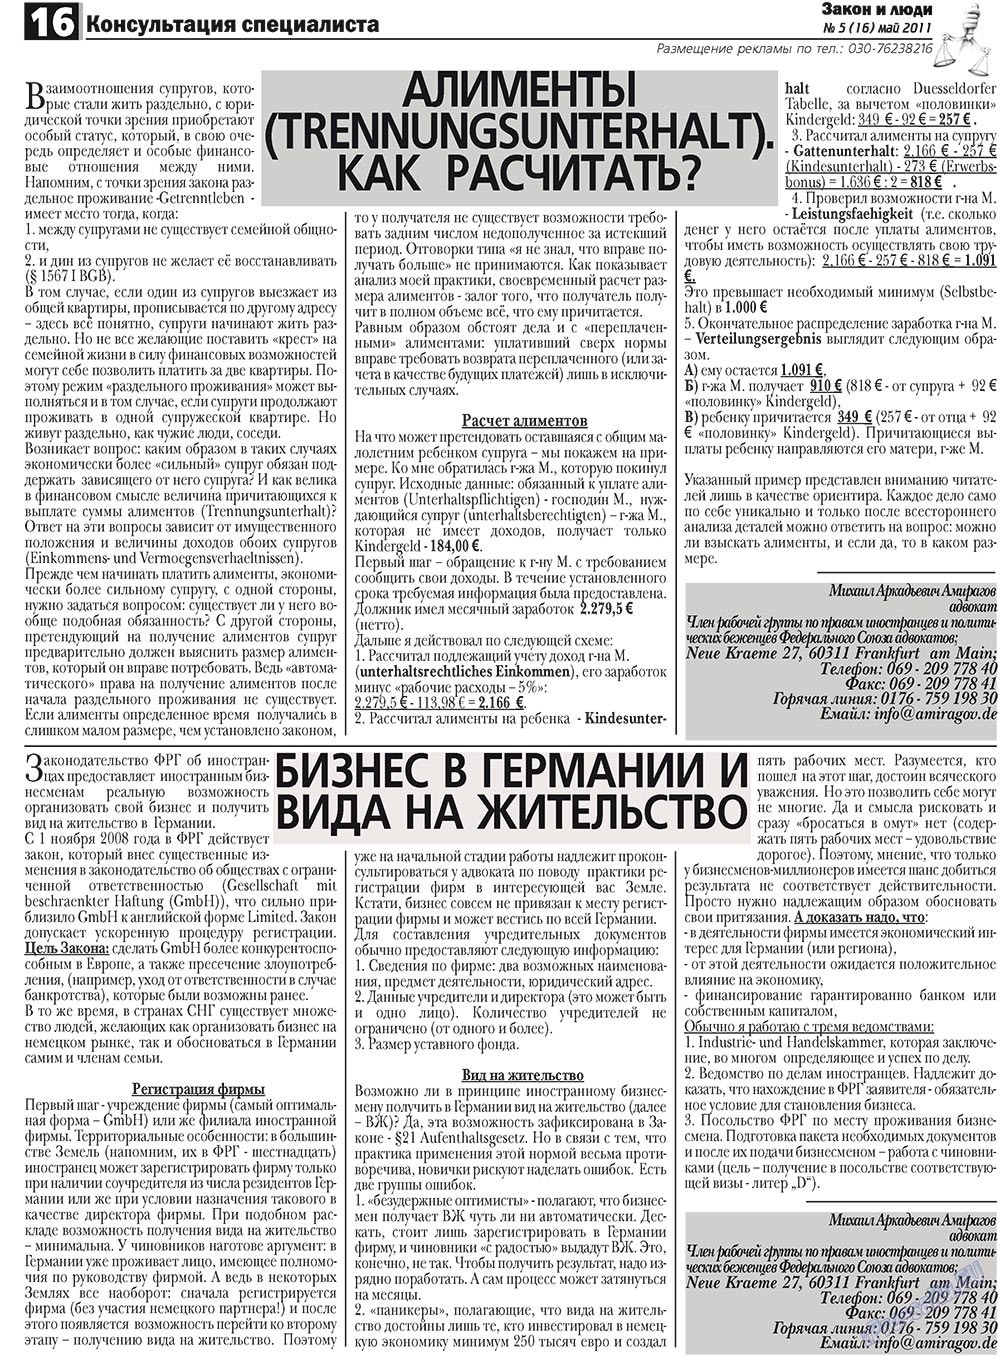 Закон и люди, газета. 2011 №5 стр.16